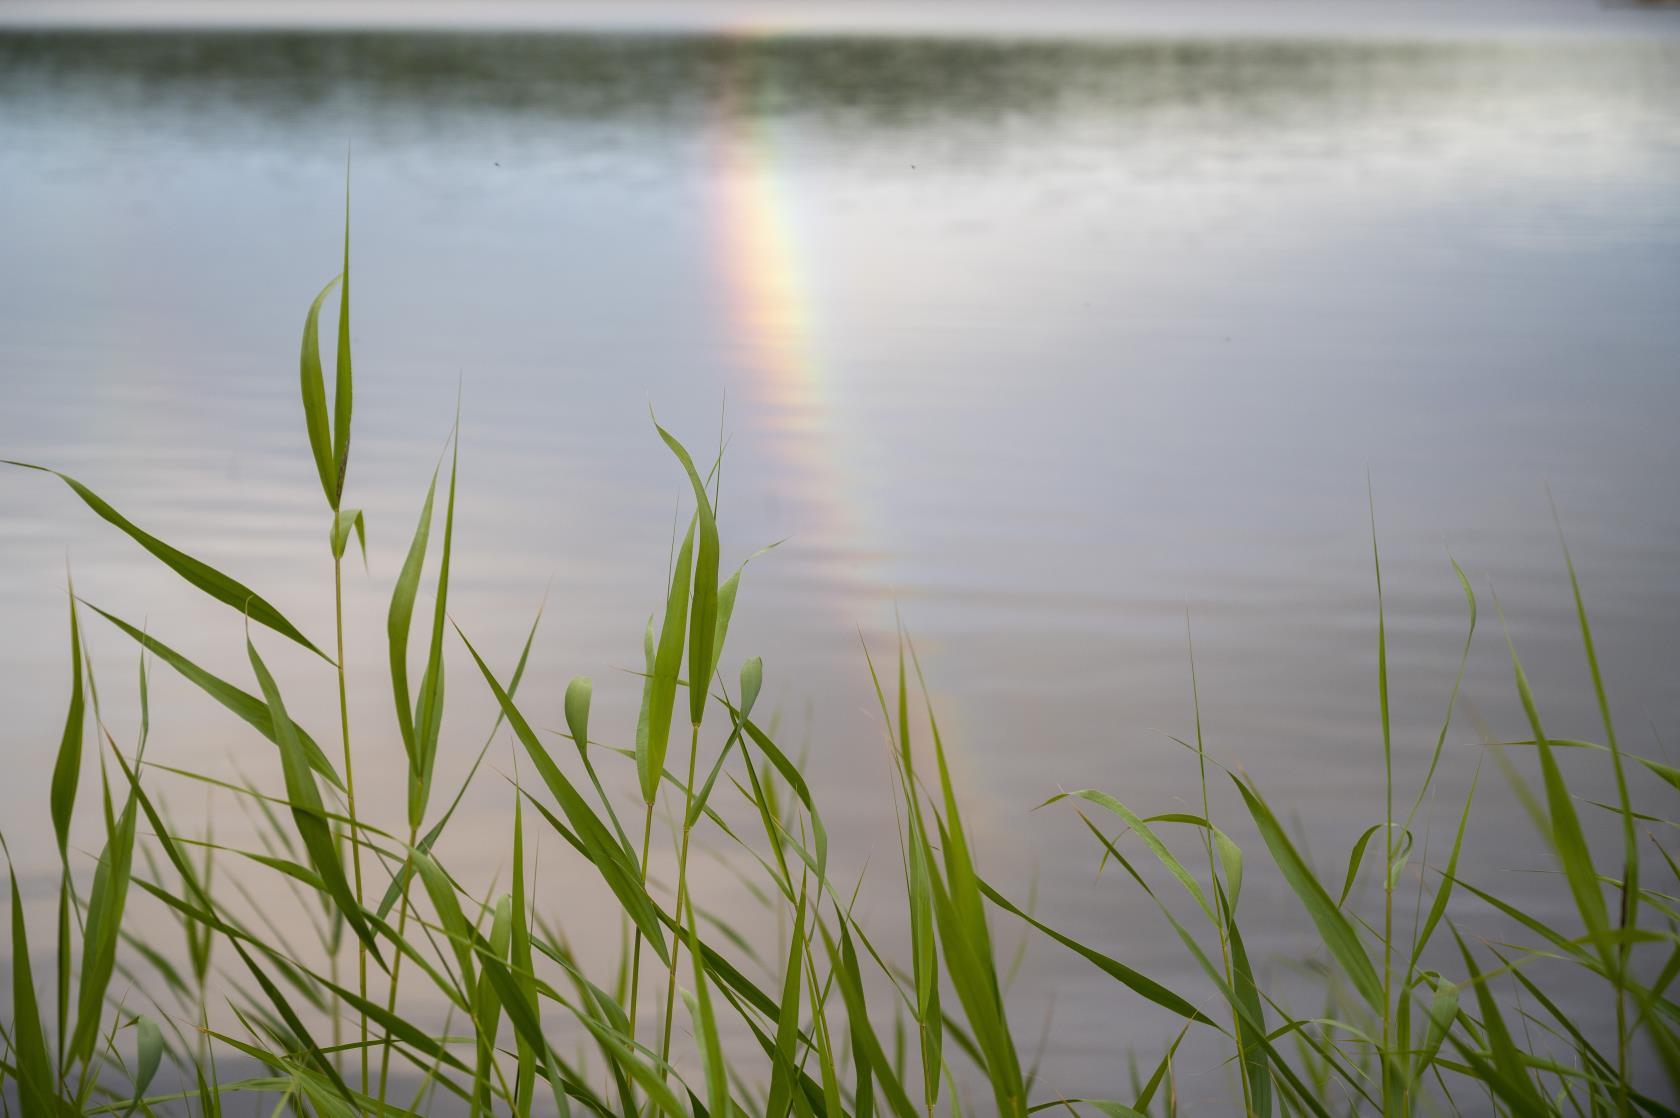 En regnbåge speglas i en sjö. Vass i förgrunden.